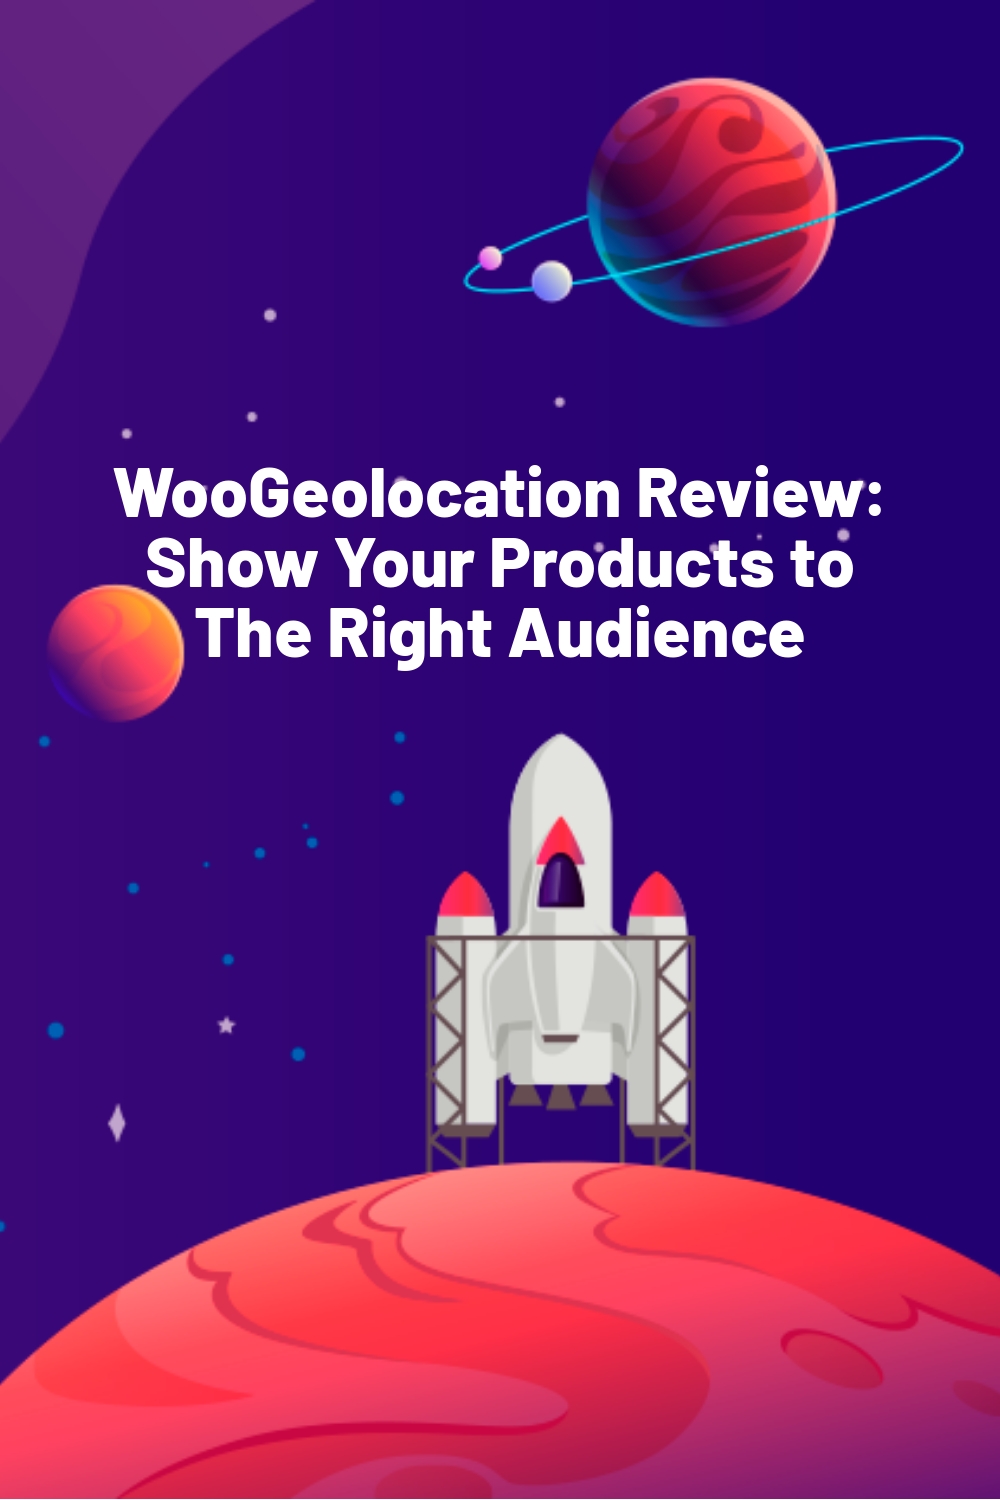 Revue de WooGeolocation : Montrez vos produits à la bonne audience